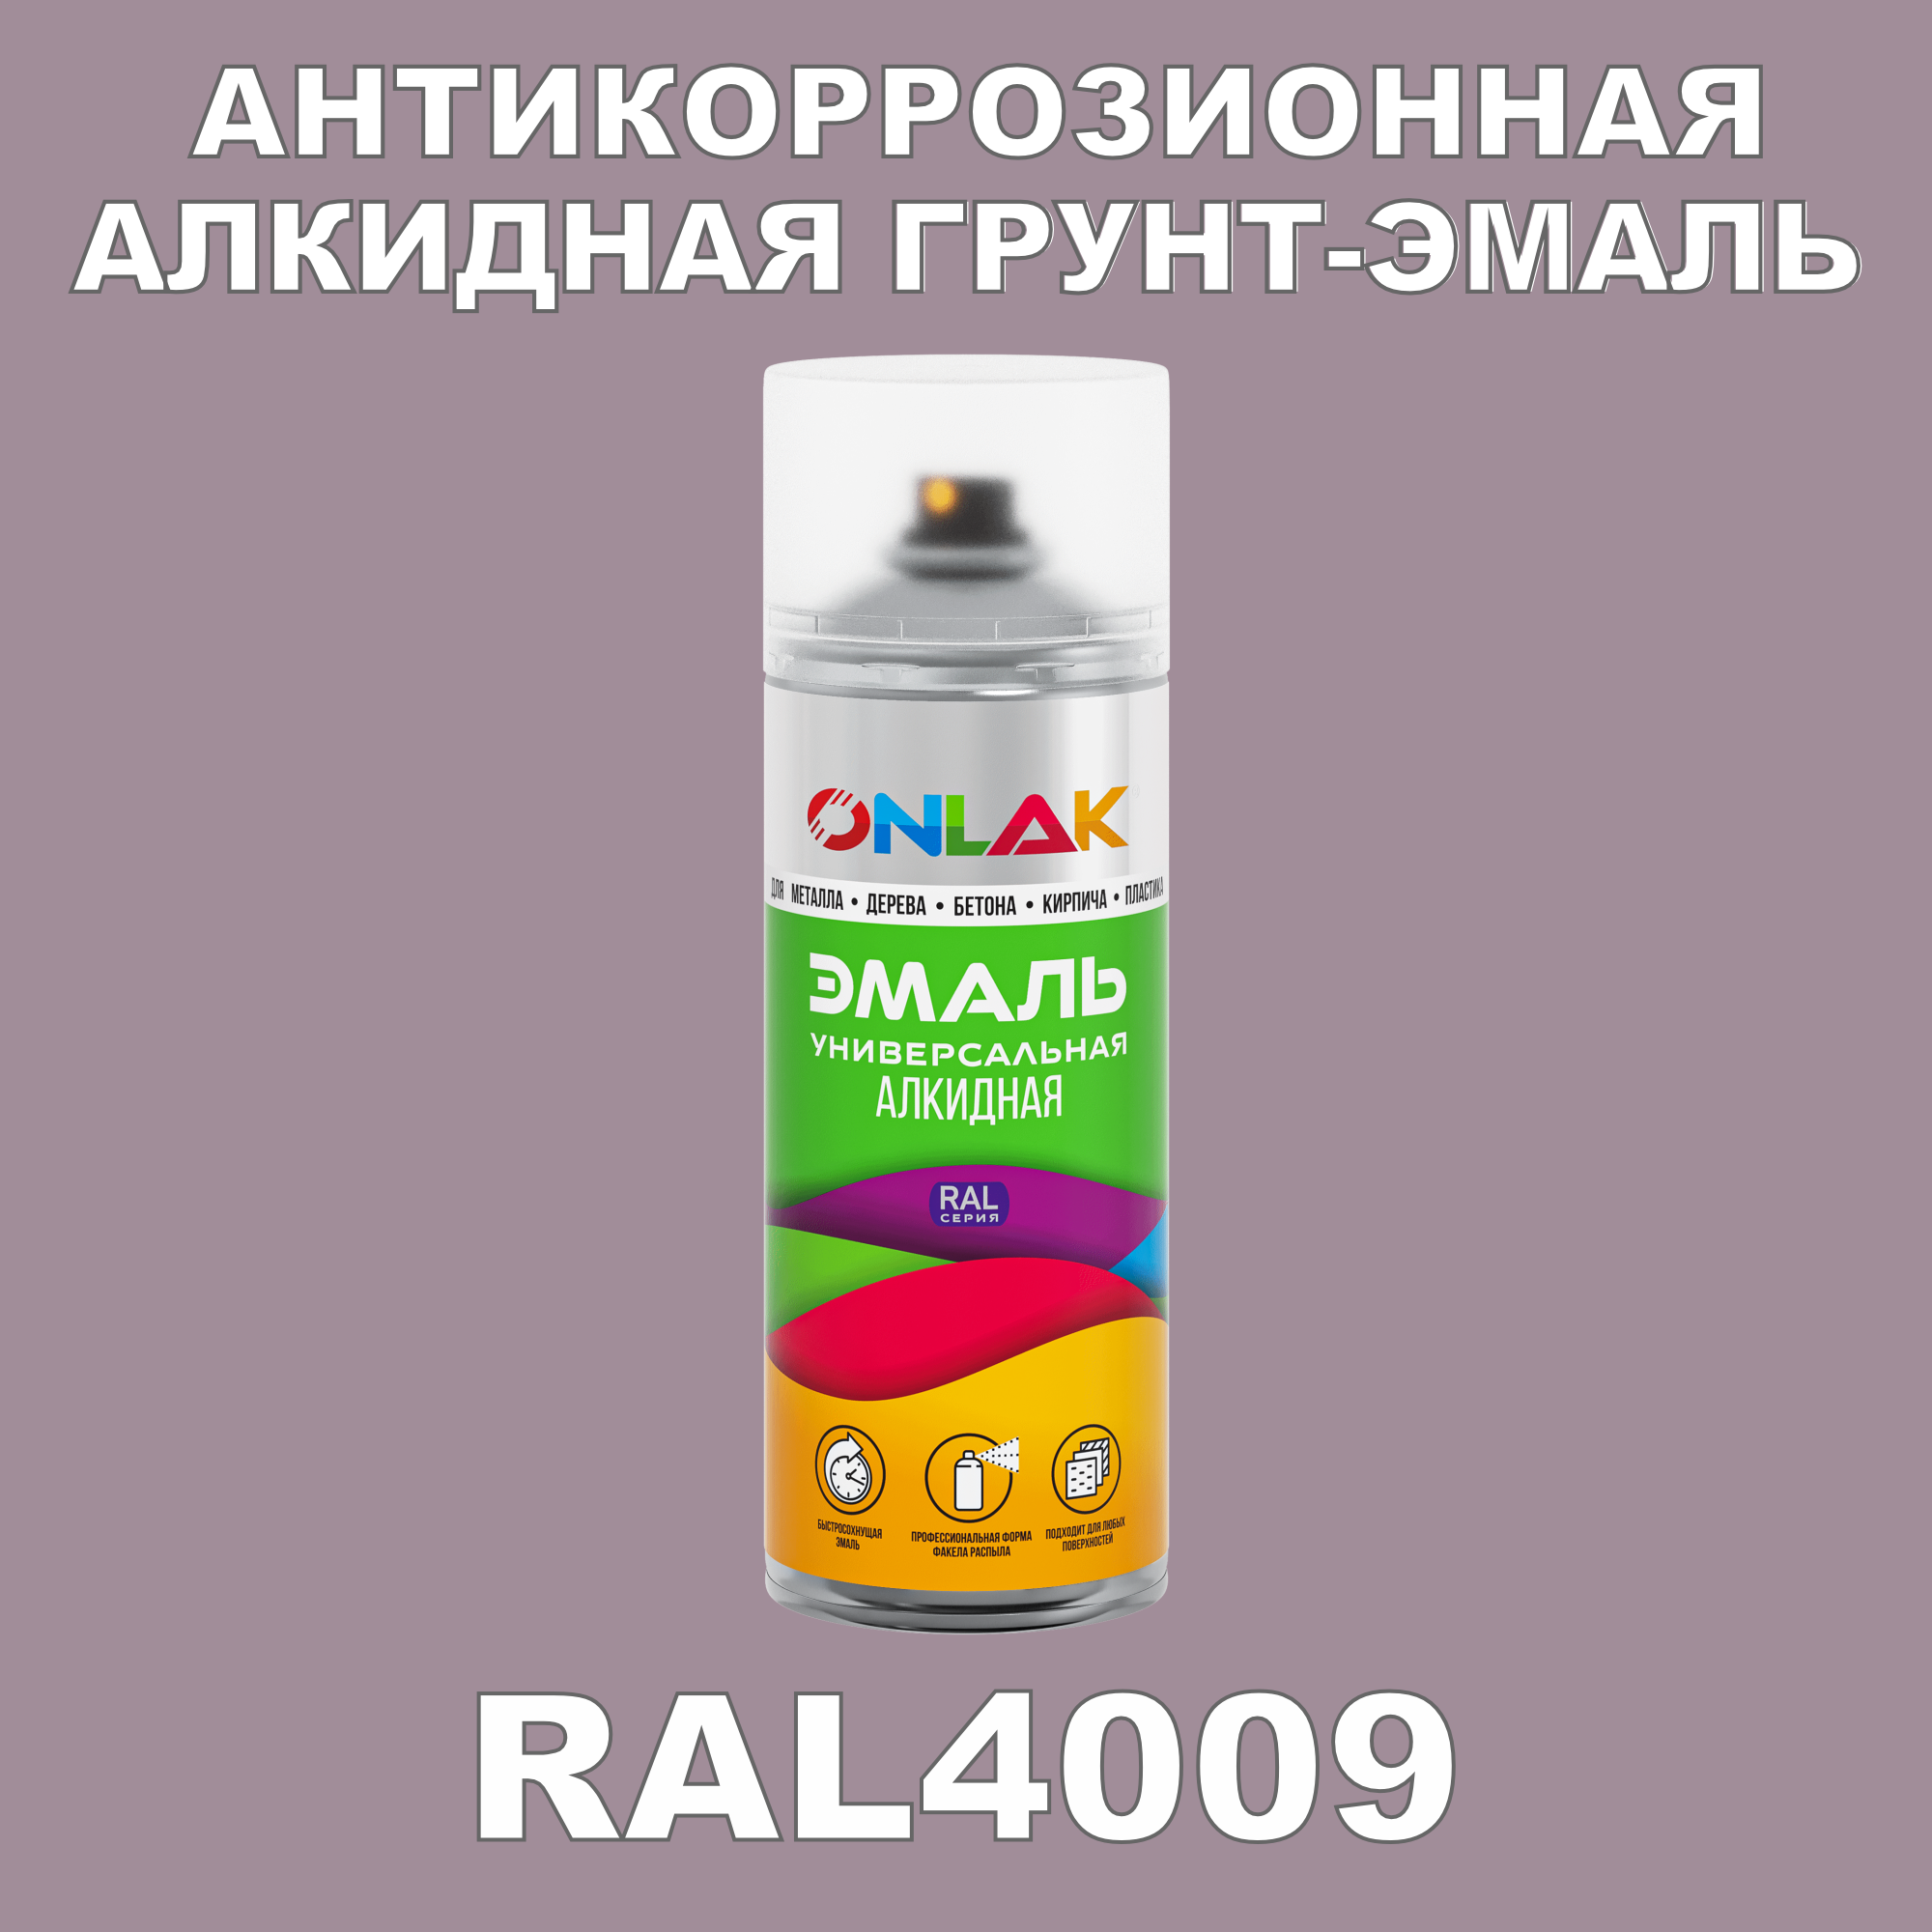 Антикоррозионная грунт-эмаль ONLAK RAL 4009,фиолетовый,593 мл artuniq color violet ной грунт для аквариума фиолетовый 1 кг